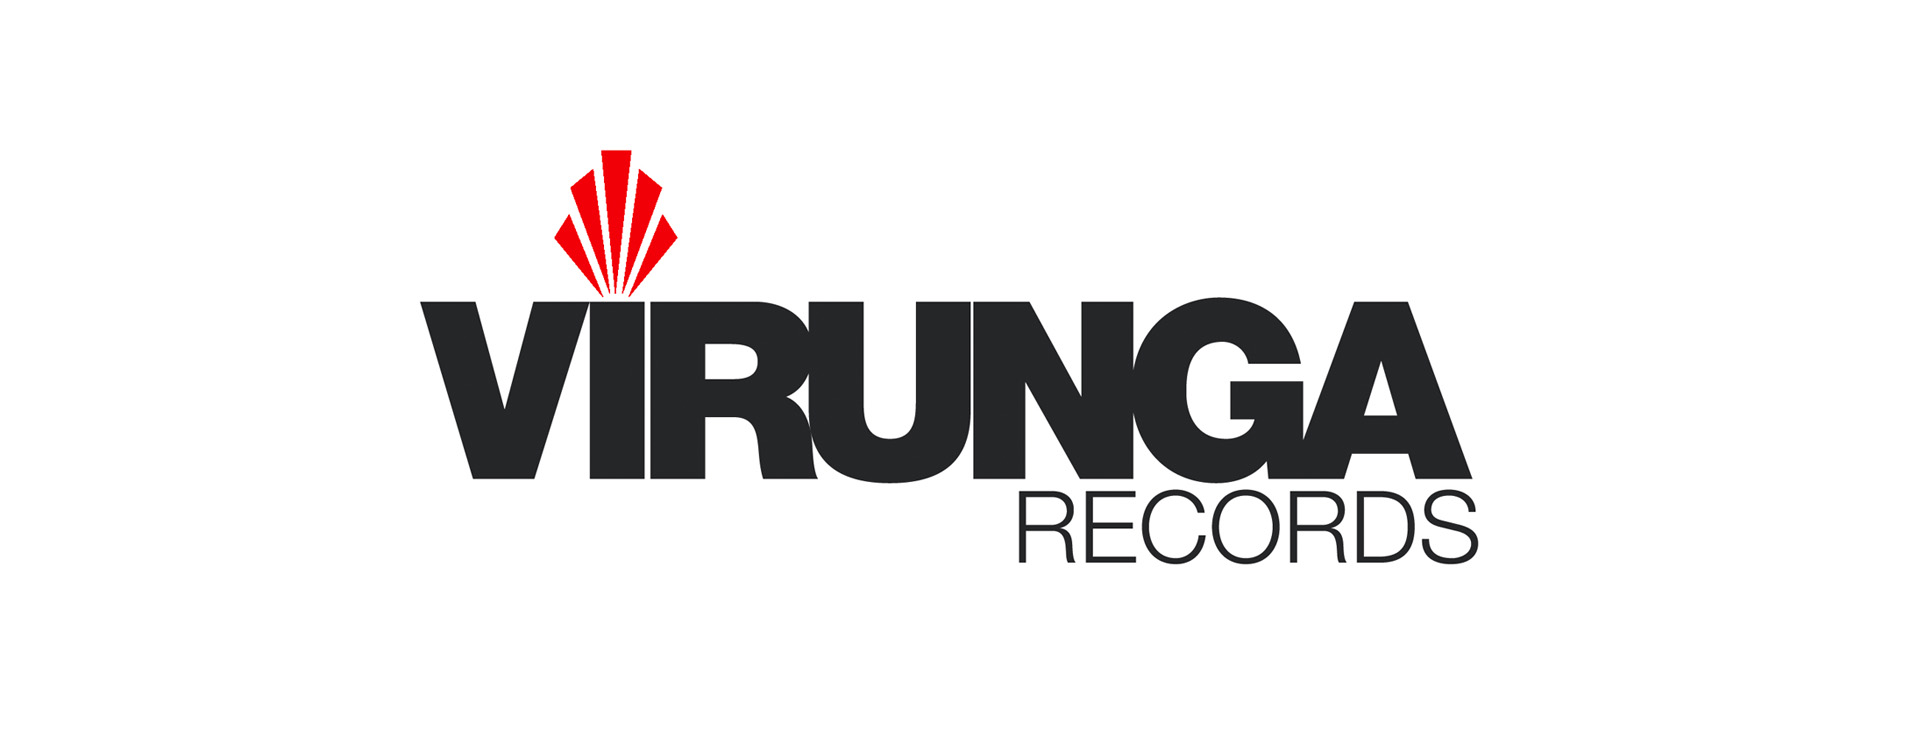 Virunga records